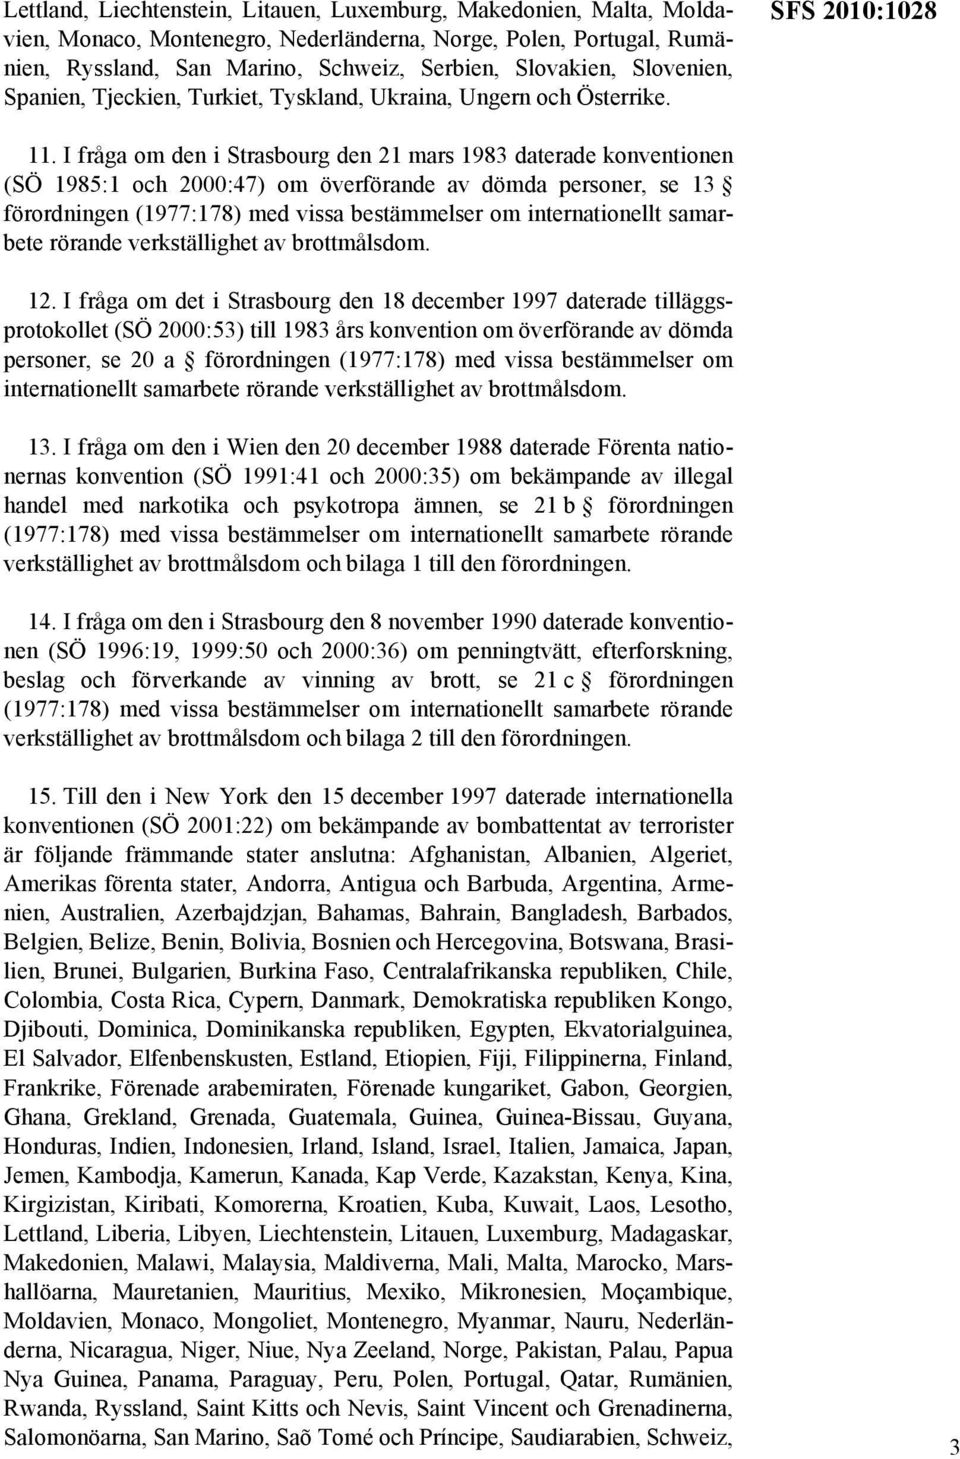 I fråga om den i Strasbourg den 21 mars 1983 daterade konventionen (SÖ 1985:1 och 2000:47) om överförande av dömda personer, se 13 förordningen (1977:178) med vissa bestämmelser om internationellt